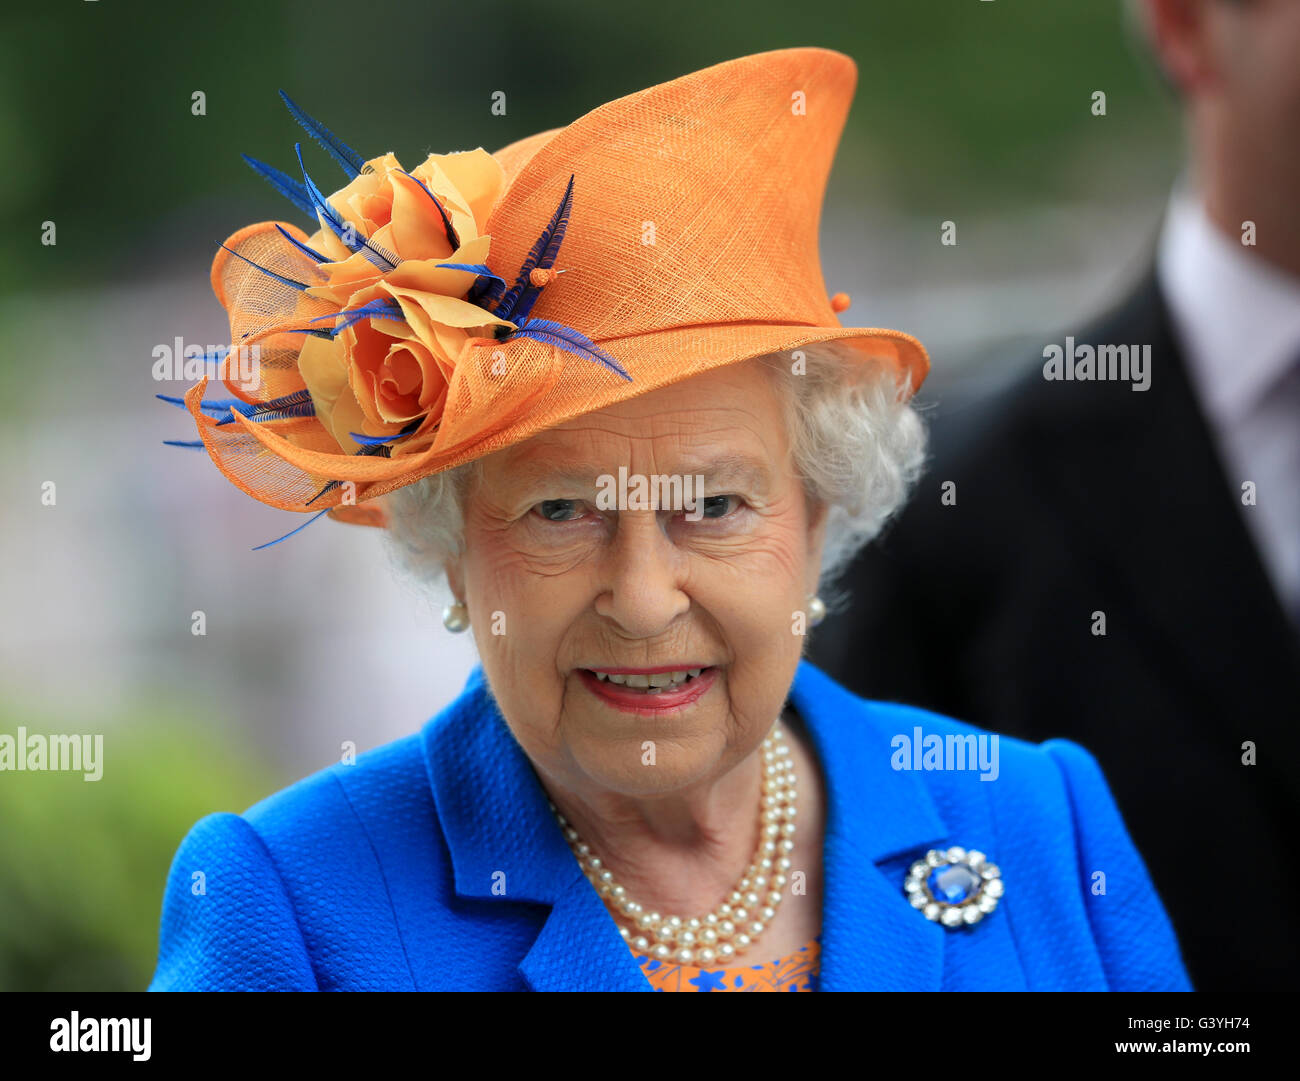 La reine Elizabeth II lors de la troisième journée de Royal Ascot, 2016 à Ascot Racecourse. Banque D'Images